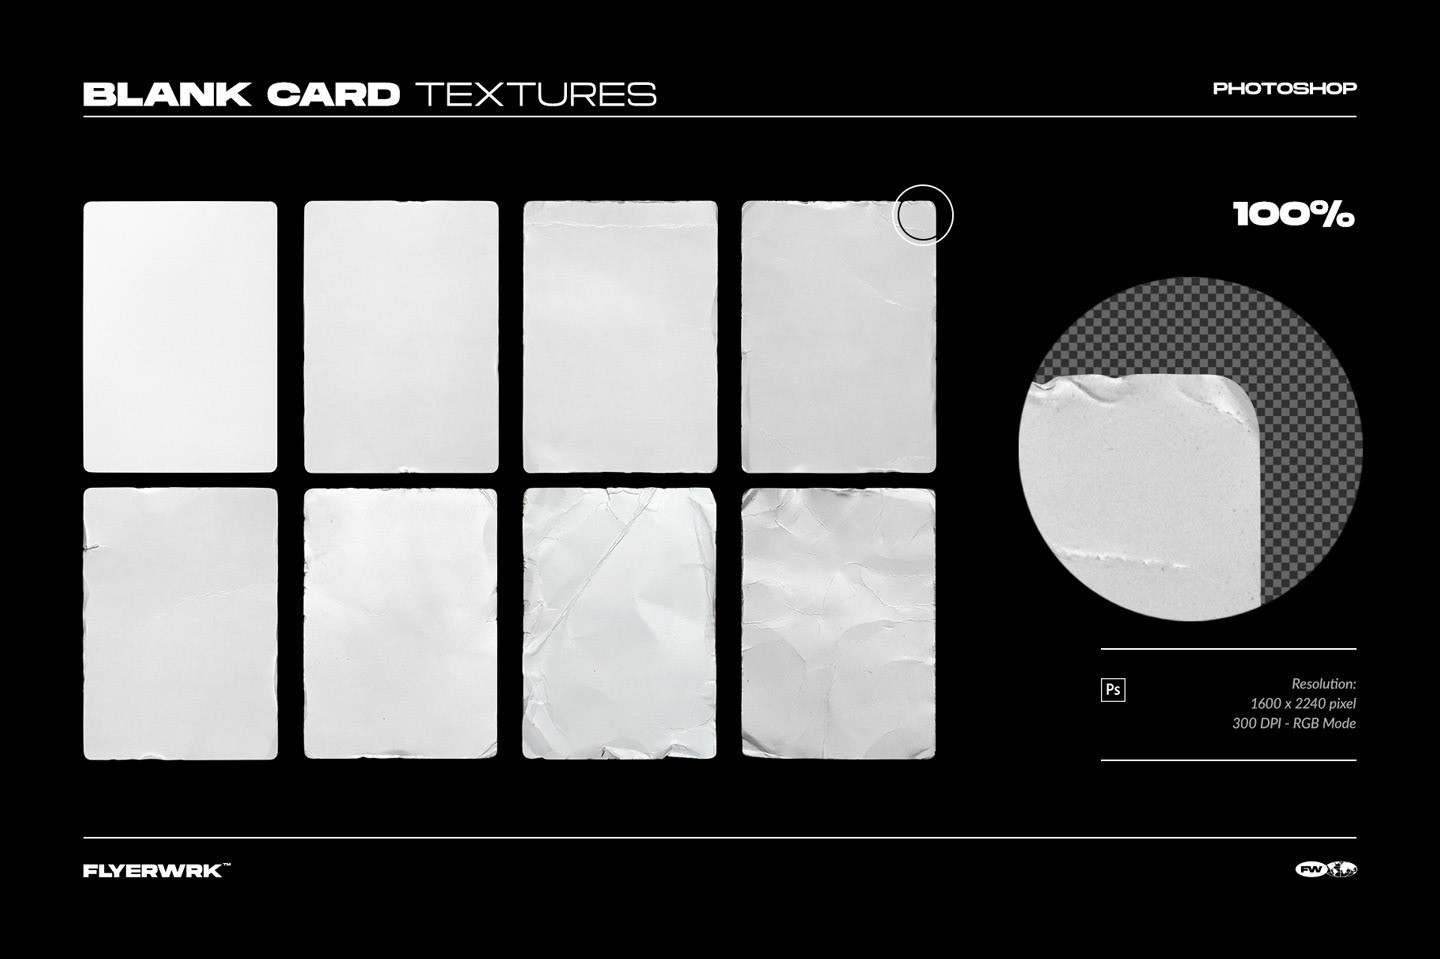 球星卡片包装设计展示样机模板PSD 样机素材 第6张